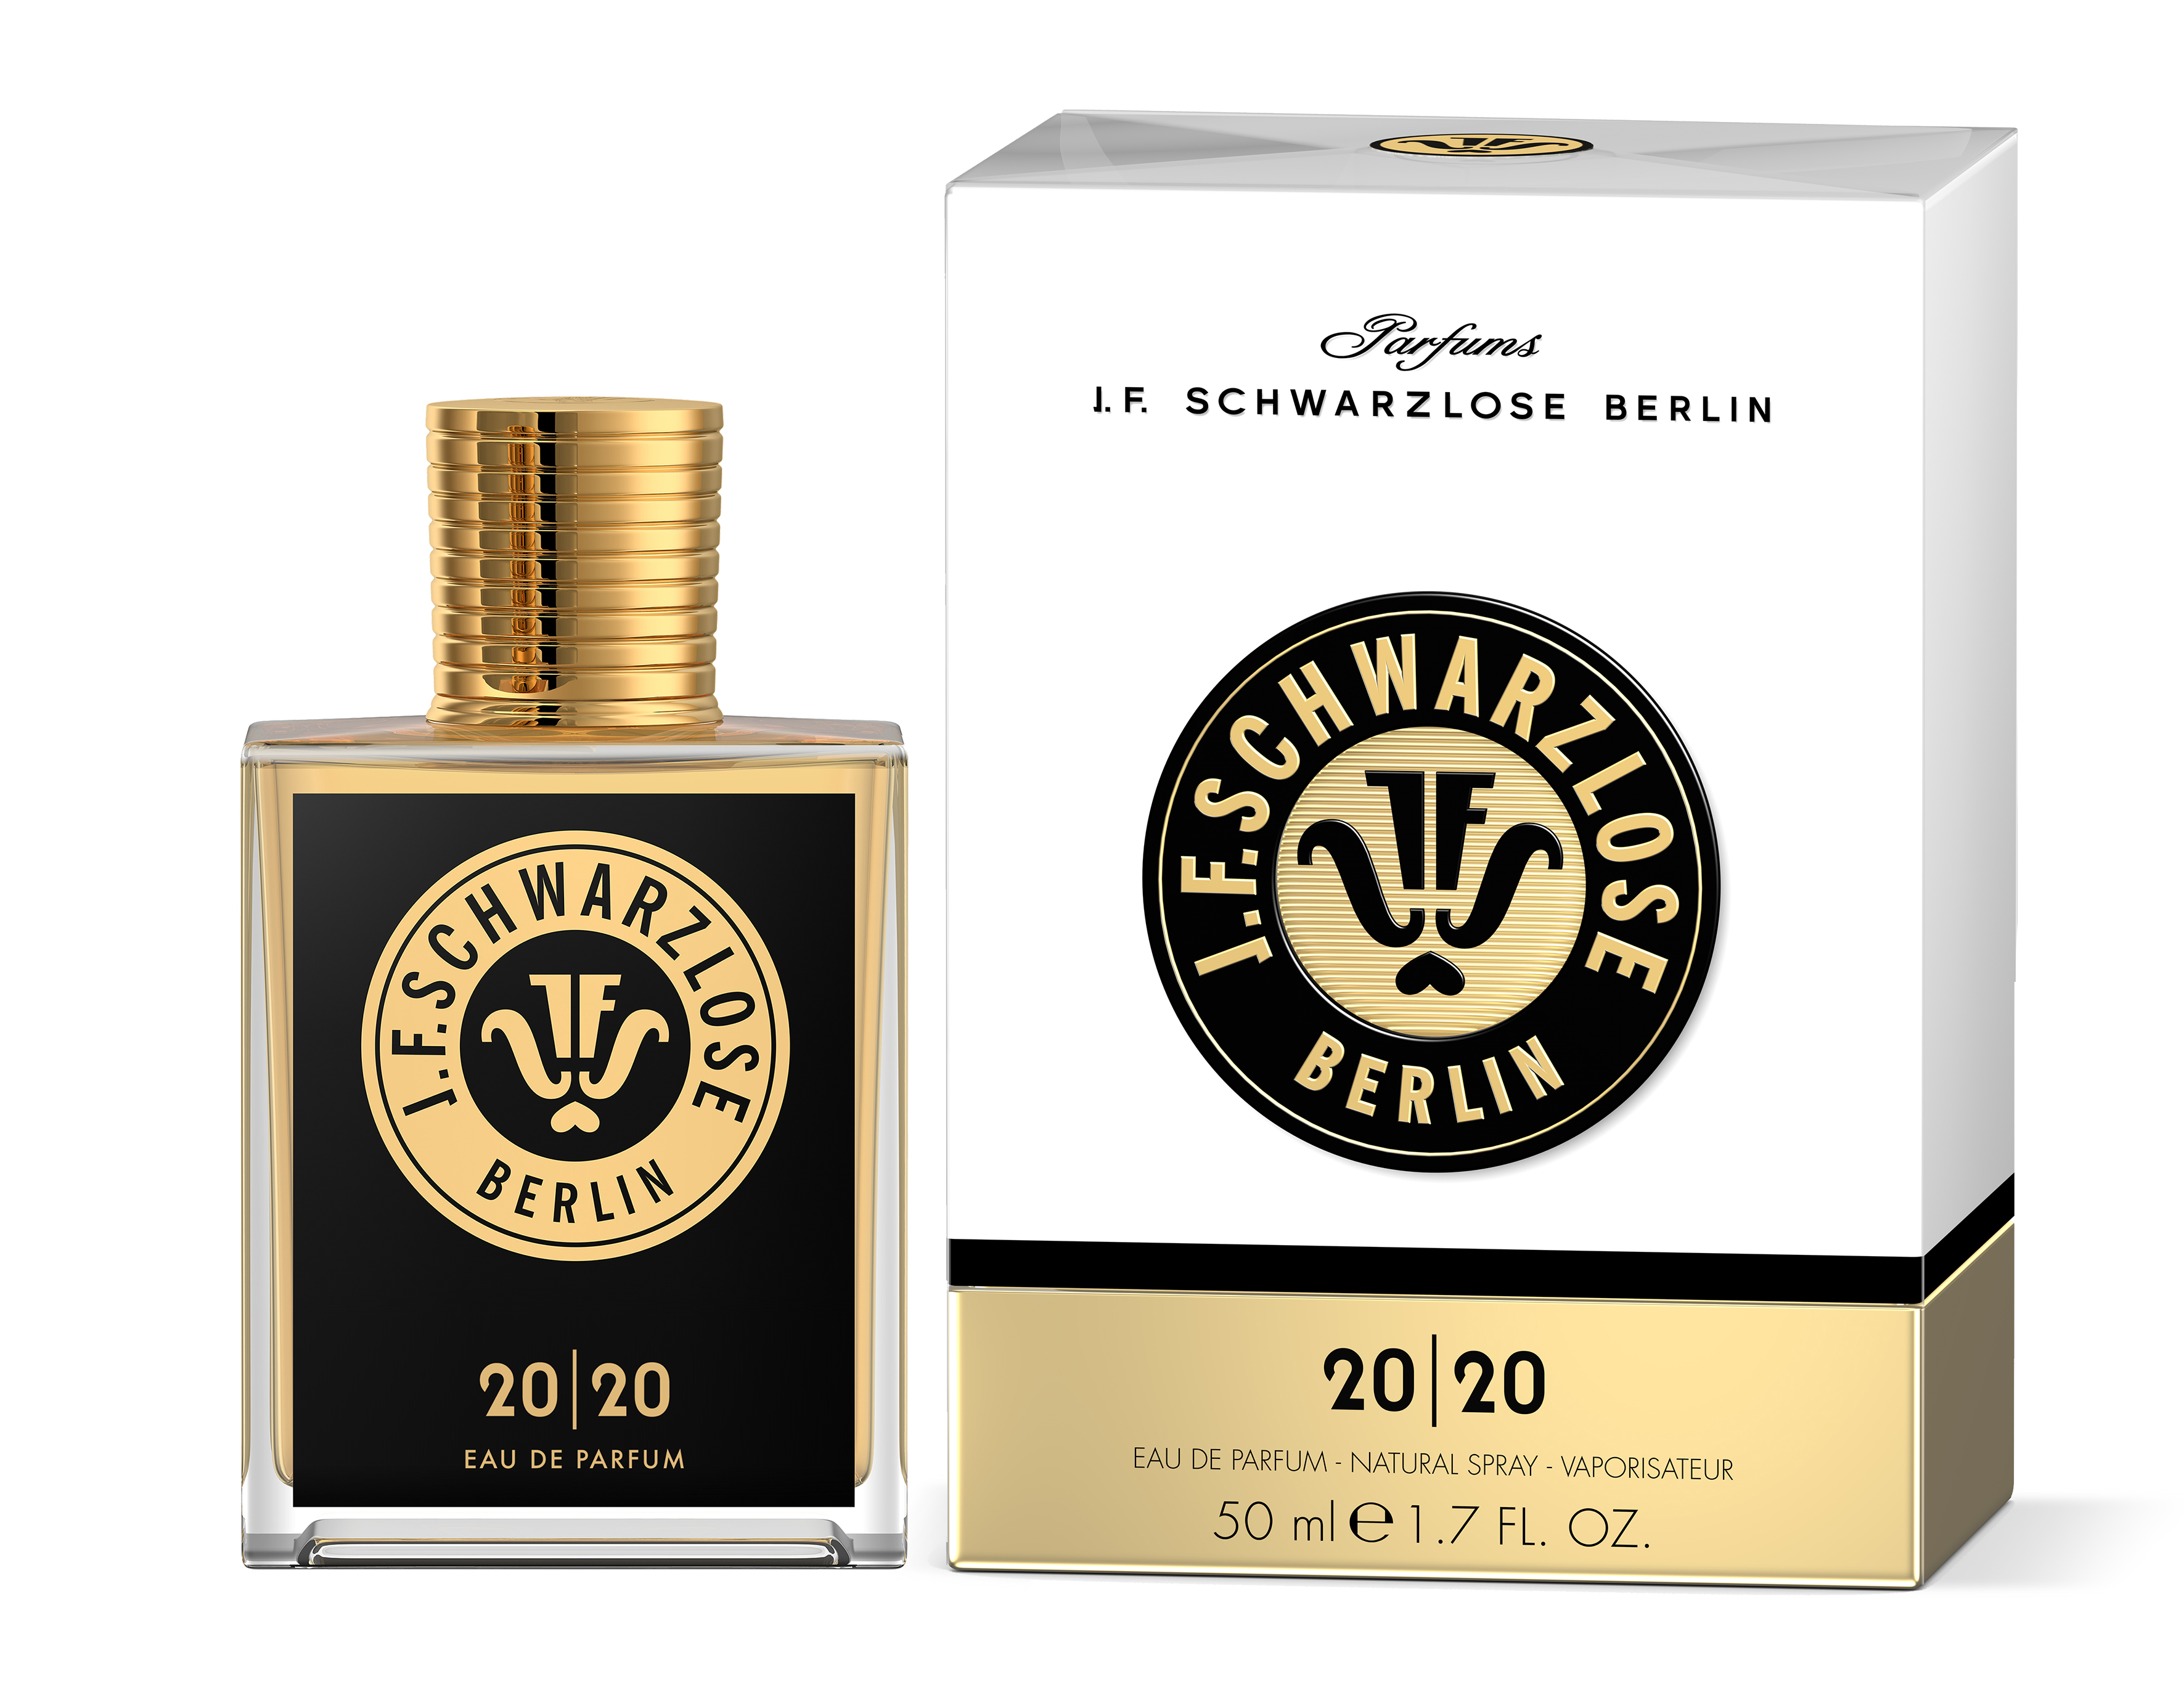 J.F. Schwarzlose Berlin 20|20 Eau de Parfum